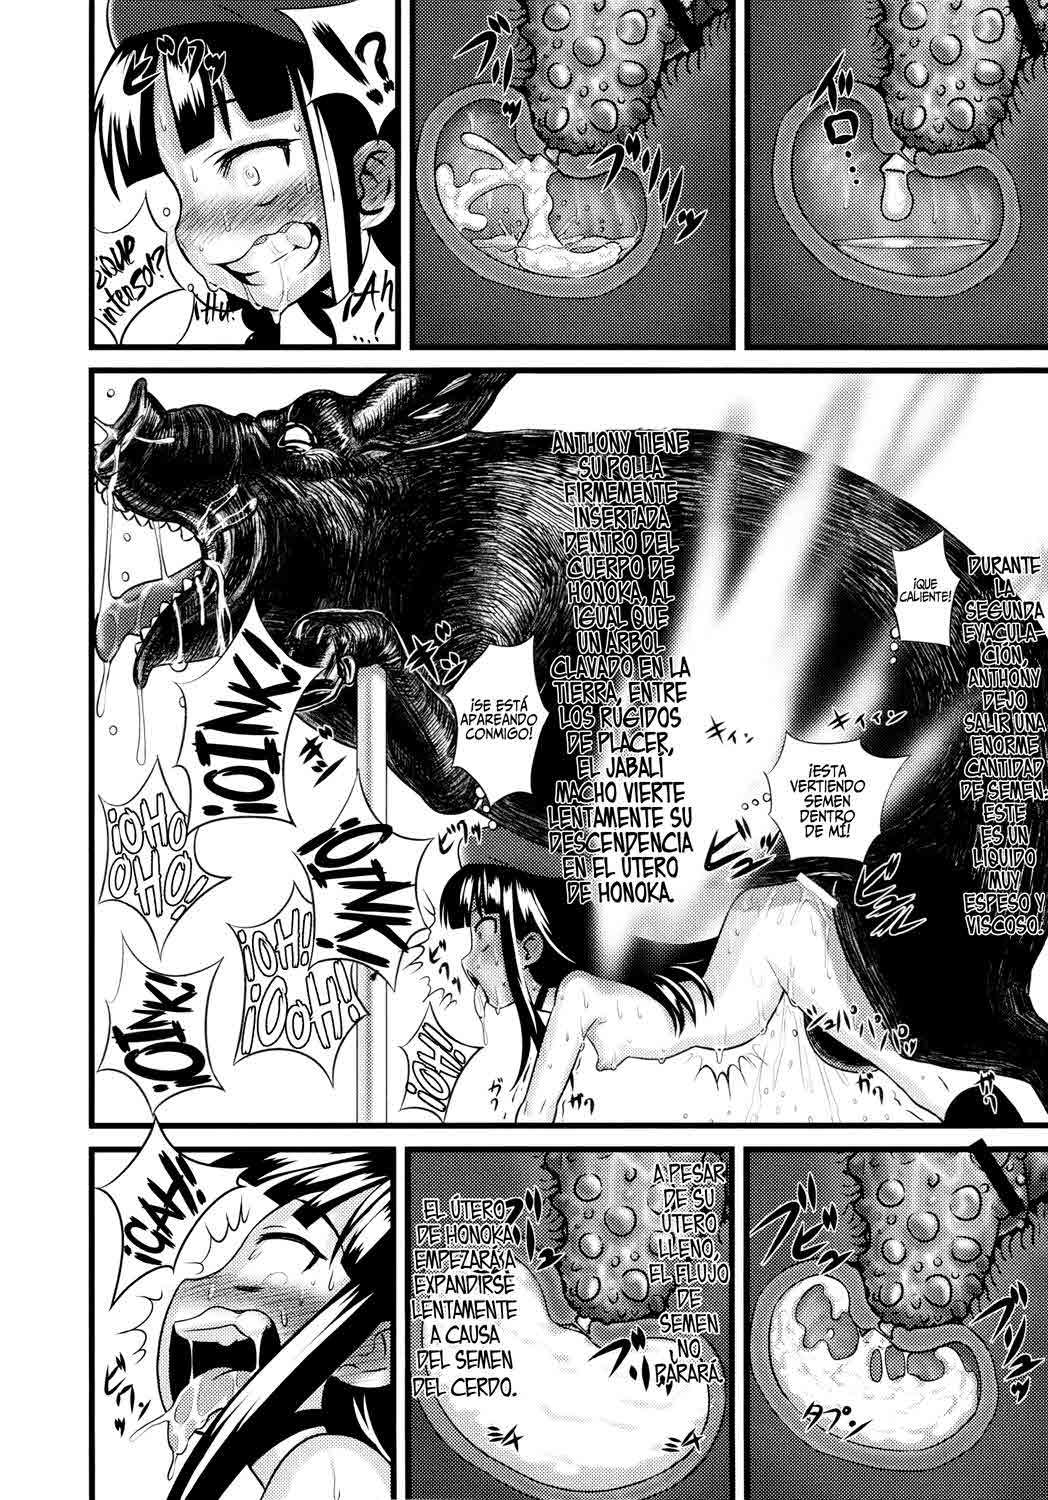 Honoka La Princesa desnuda y su orgásmico despertas copulando con un cerdo Chapter-1 - 51